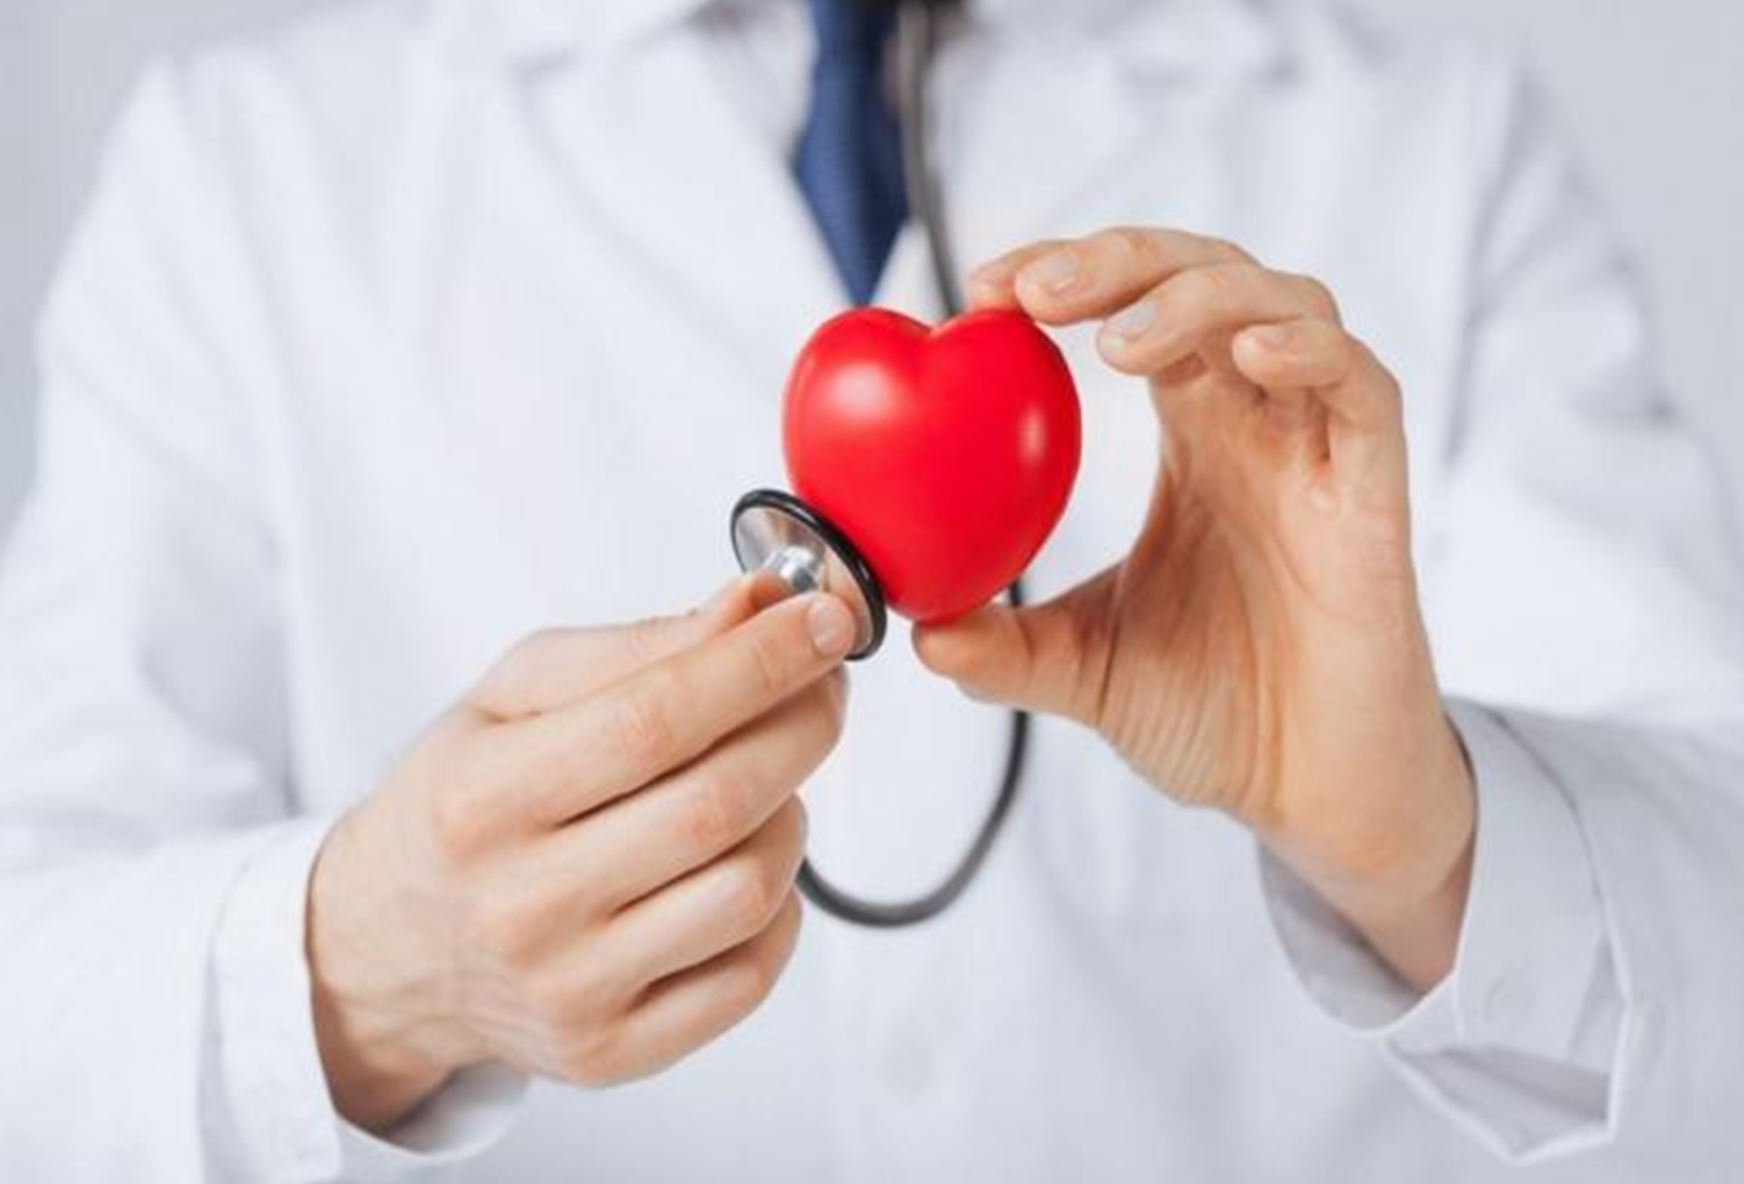 اسباب امراض القلب وطرق الوقاية منها